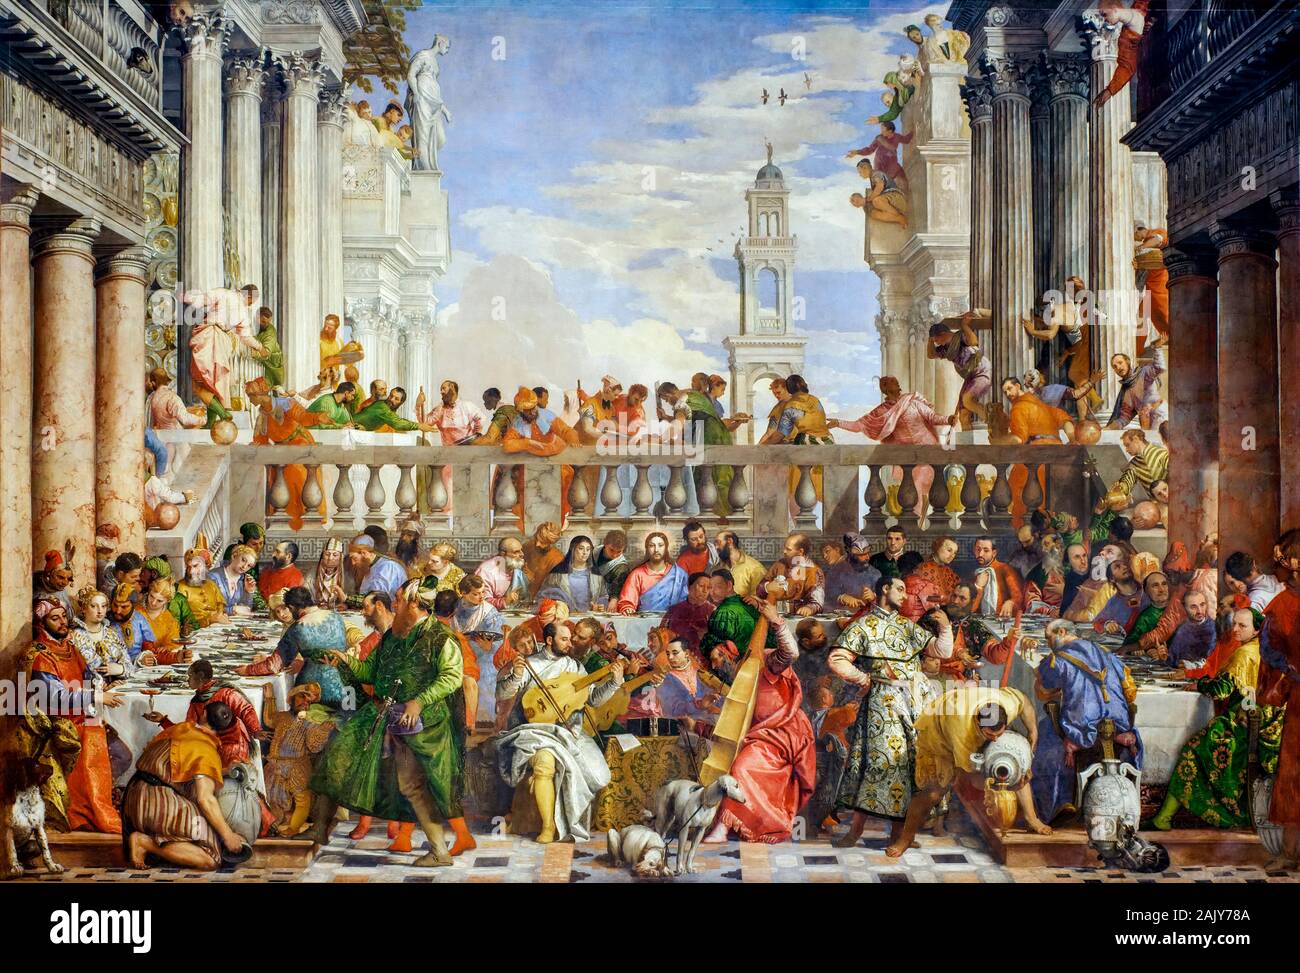 Paolo Veronese, das Hochzeitsfest zu Kana, (die Hochzeit zu Kana), Renaissance-Malerei, 1562-1563 Stockfoto